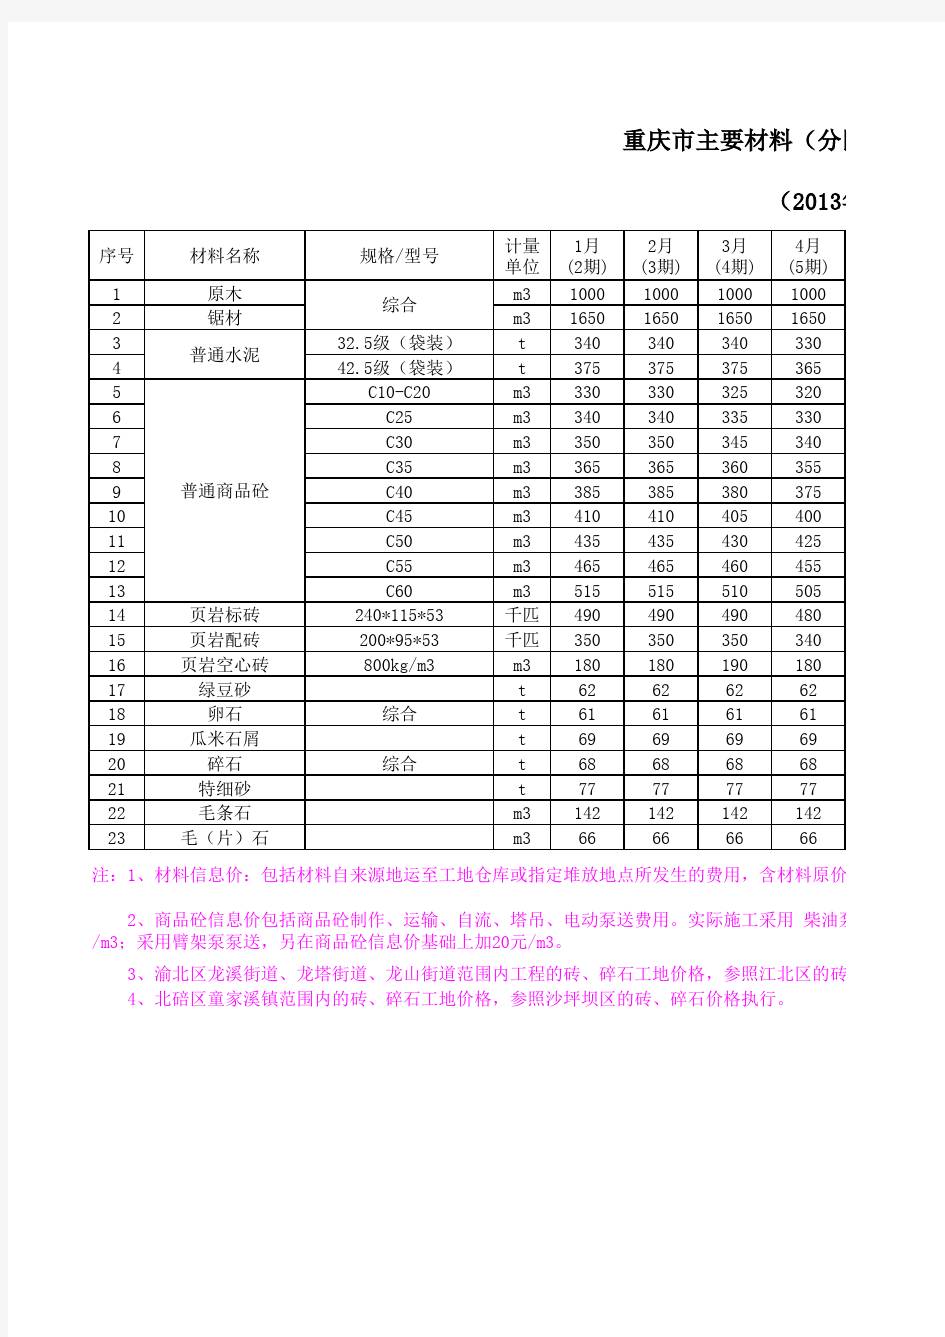 重庆2013年材料造价信息价格汇总表(分地区部分)